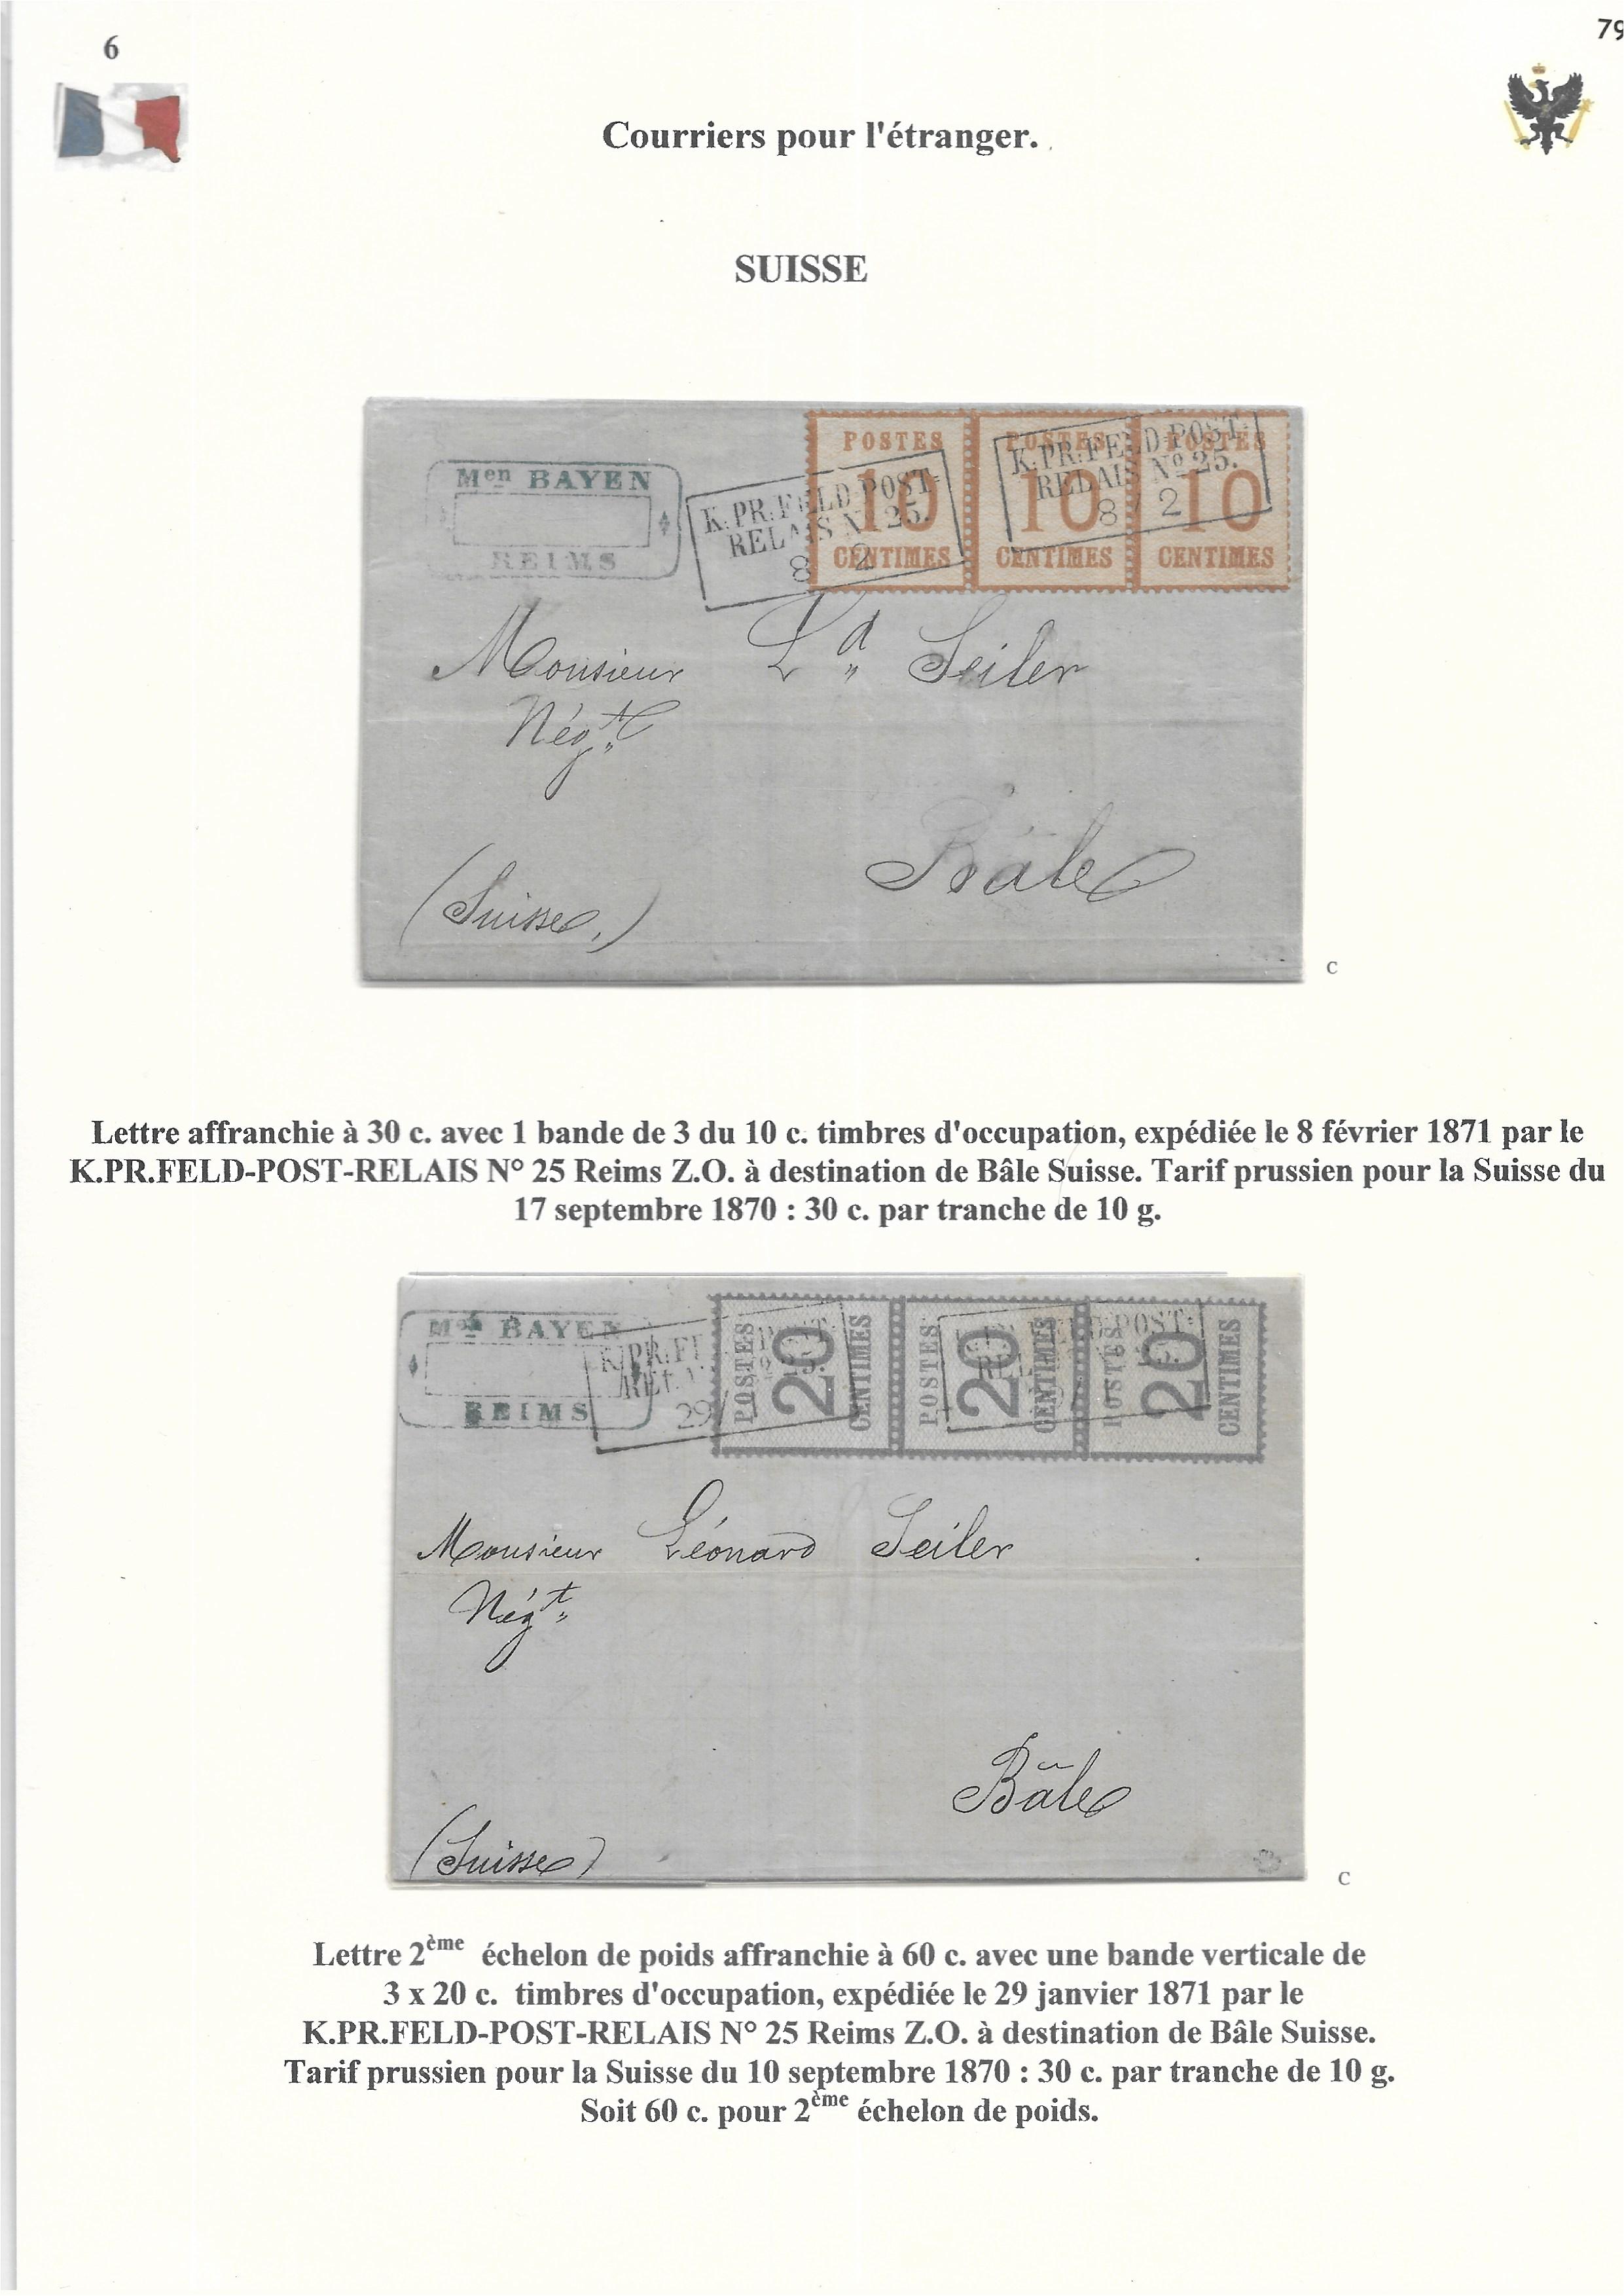 Occupation Prussienne dans la Marne 1870-1872 : Cons��quences sur les relations postales p. 78